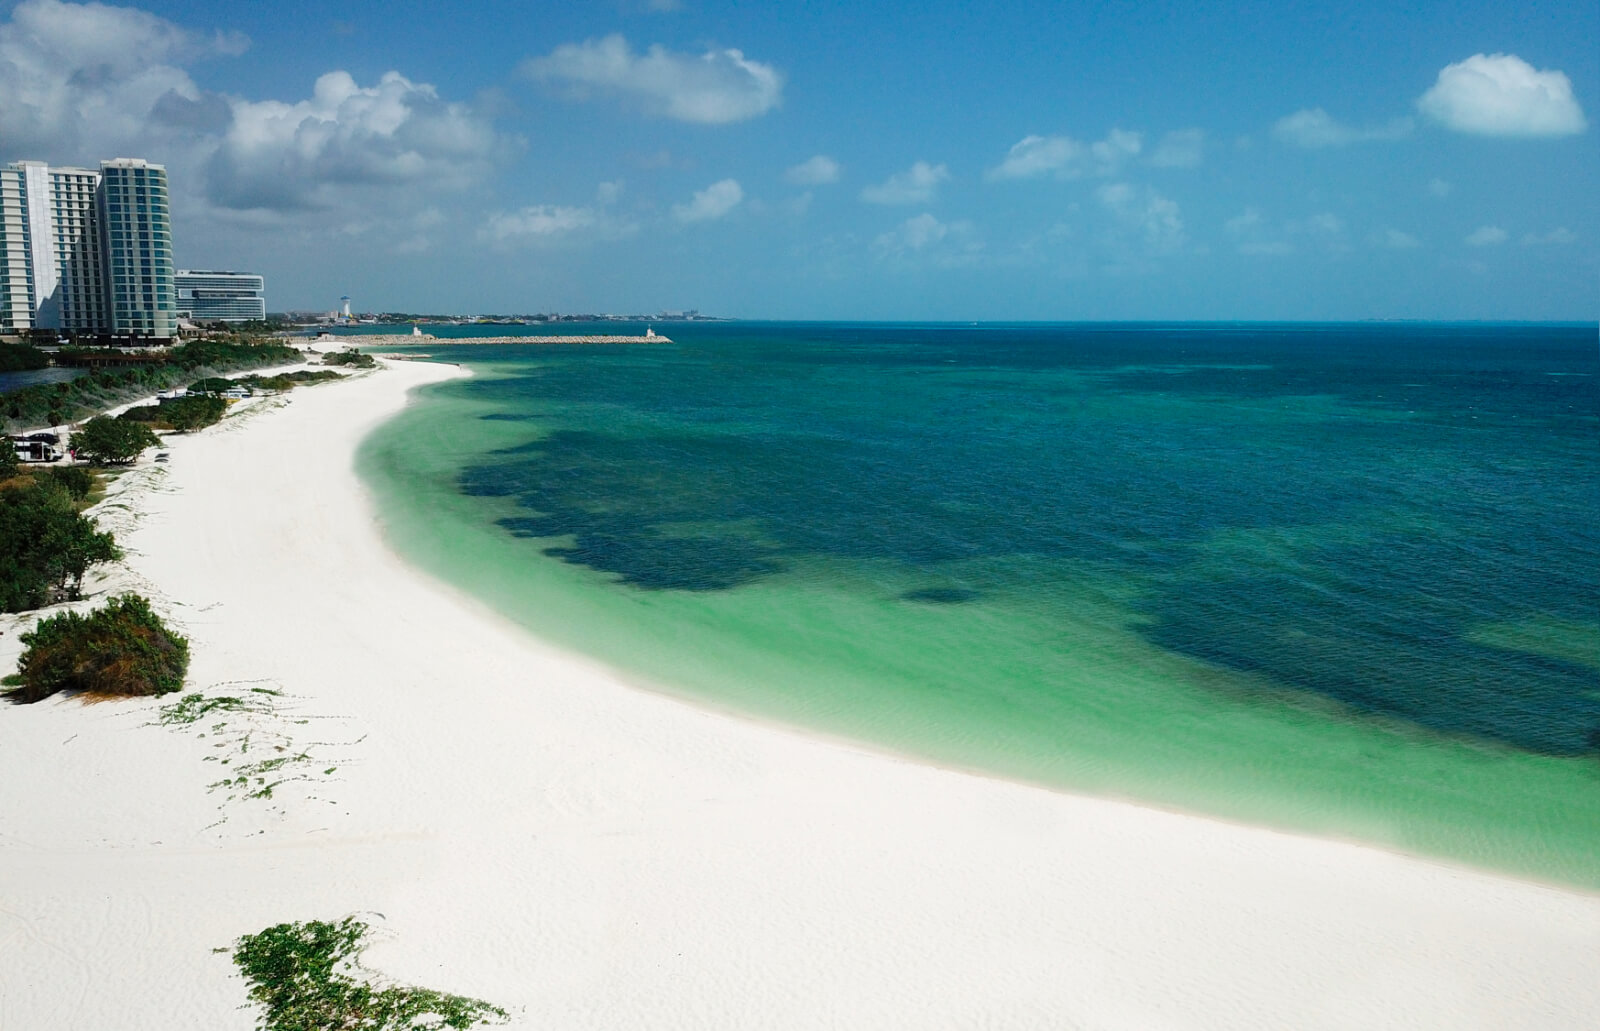 Departamento con Club de playa frente al mar, Alberca, gym y Salón de eventos, en   Costa mujeres, Cancun.